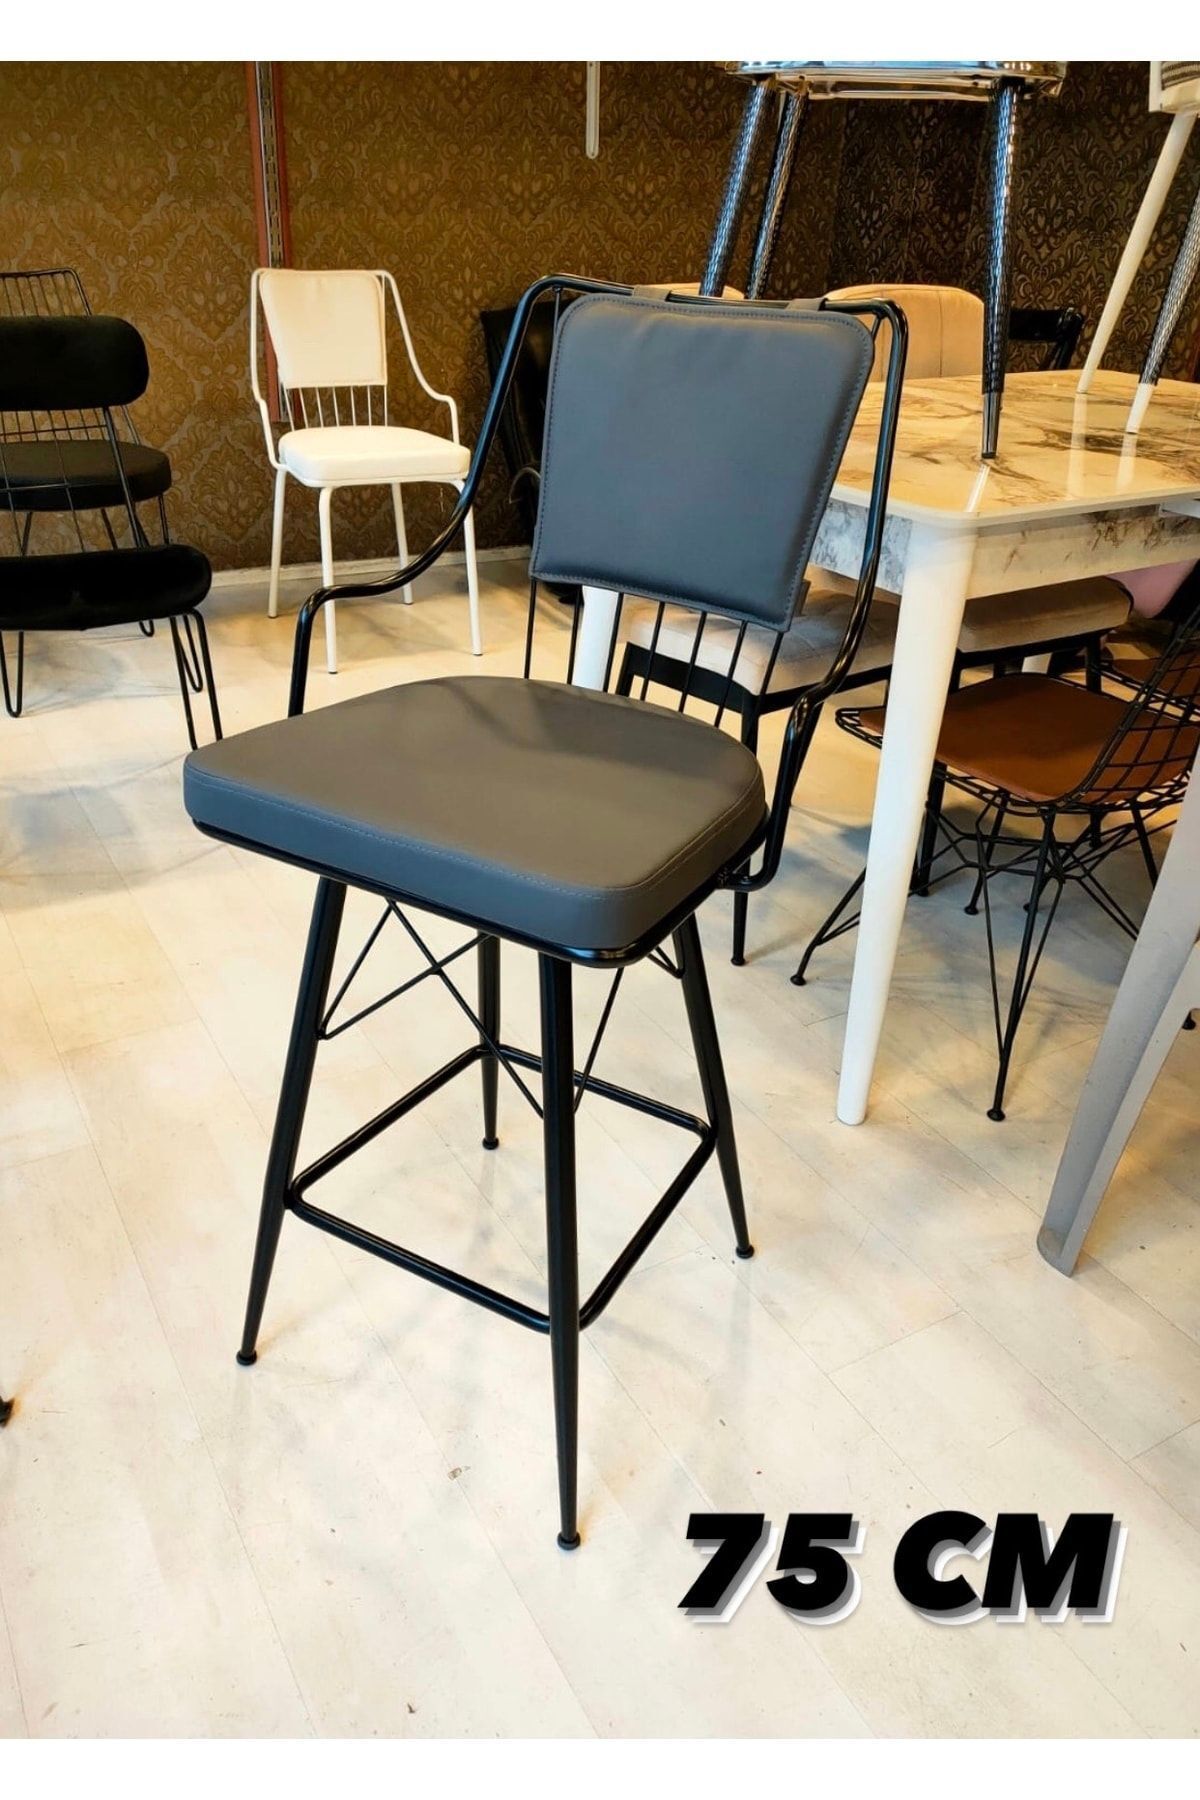 Sandalye Shop Yeni Reina Bar Sandalyesi 75 Cm Antrasit.100 Ile 115 Cm Arası Ada&masalara Uygundur